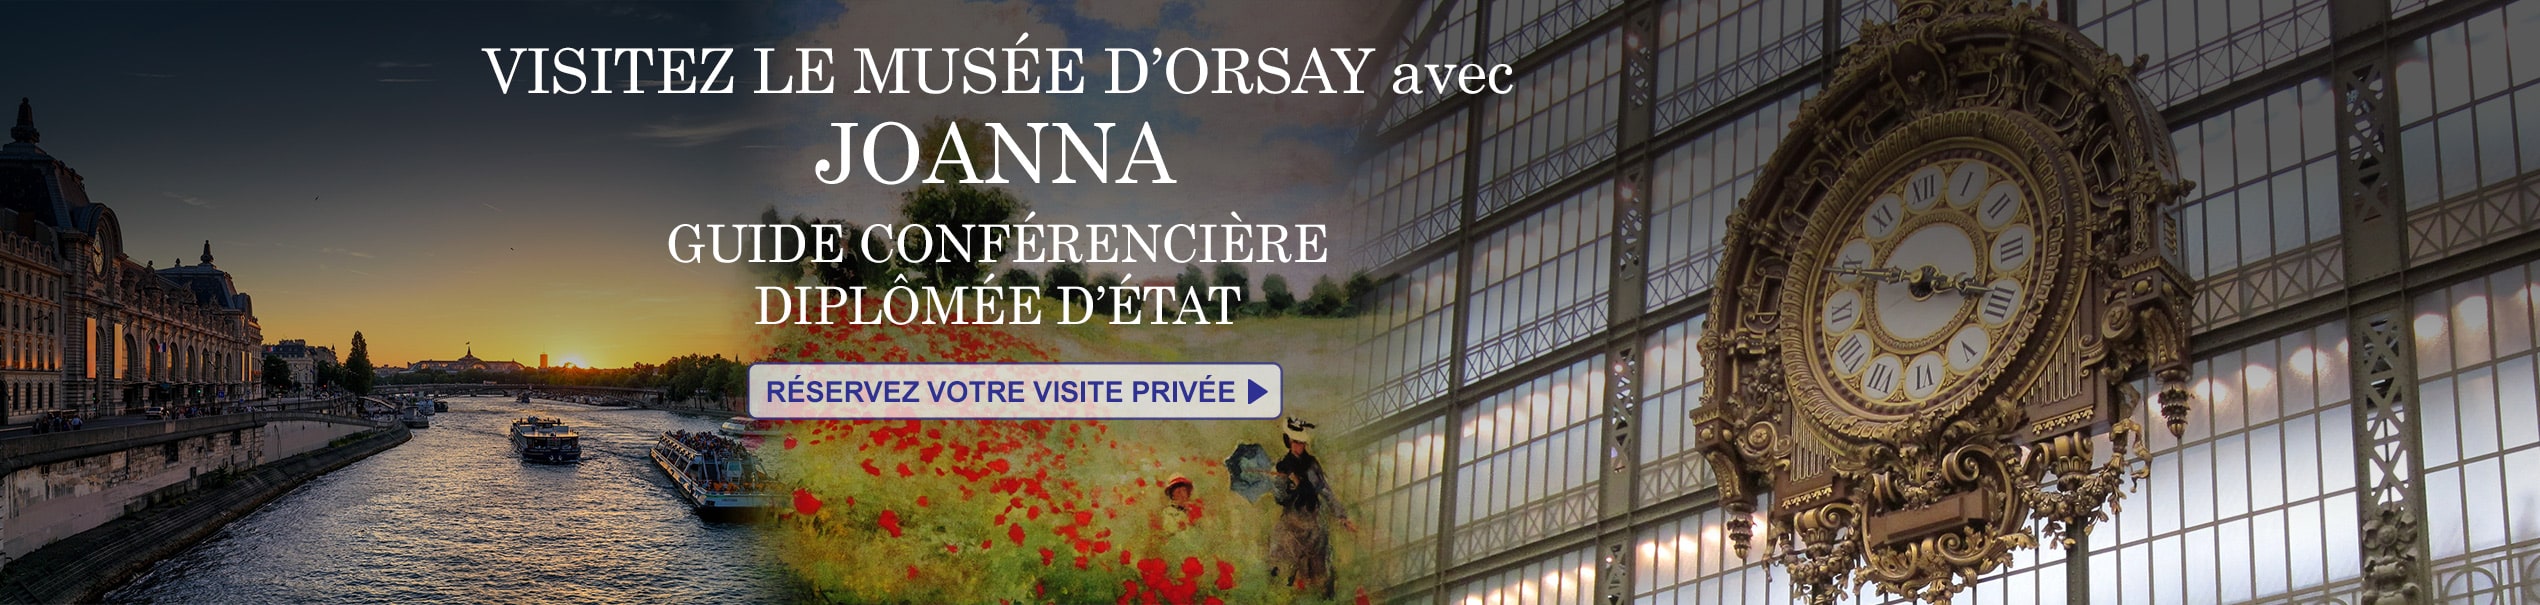 Visitez le musée d'Orsay avec Joanna